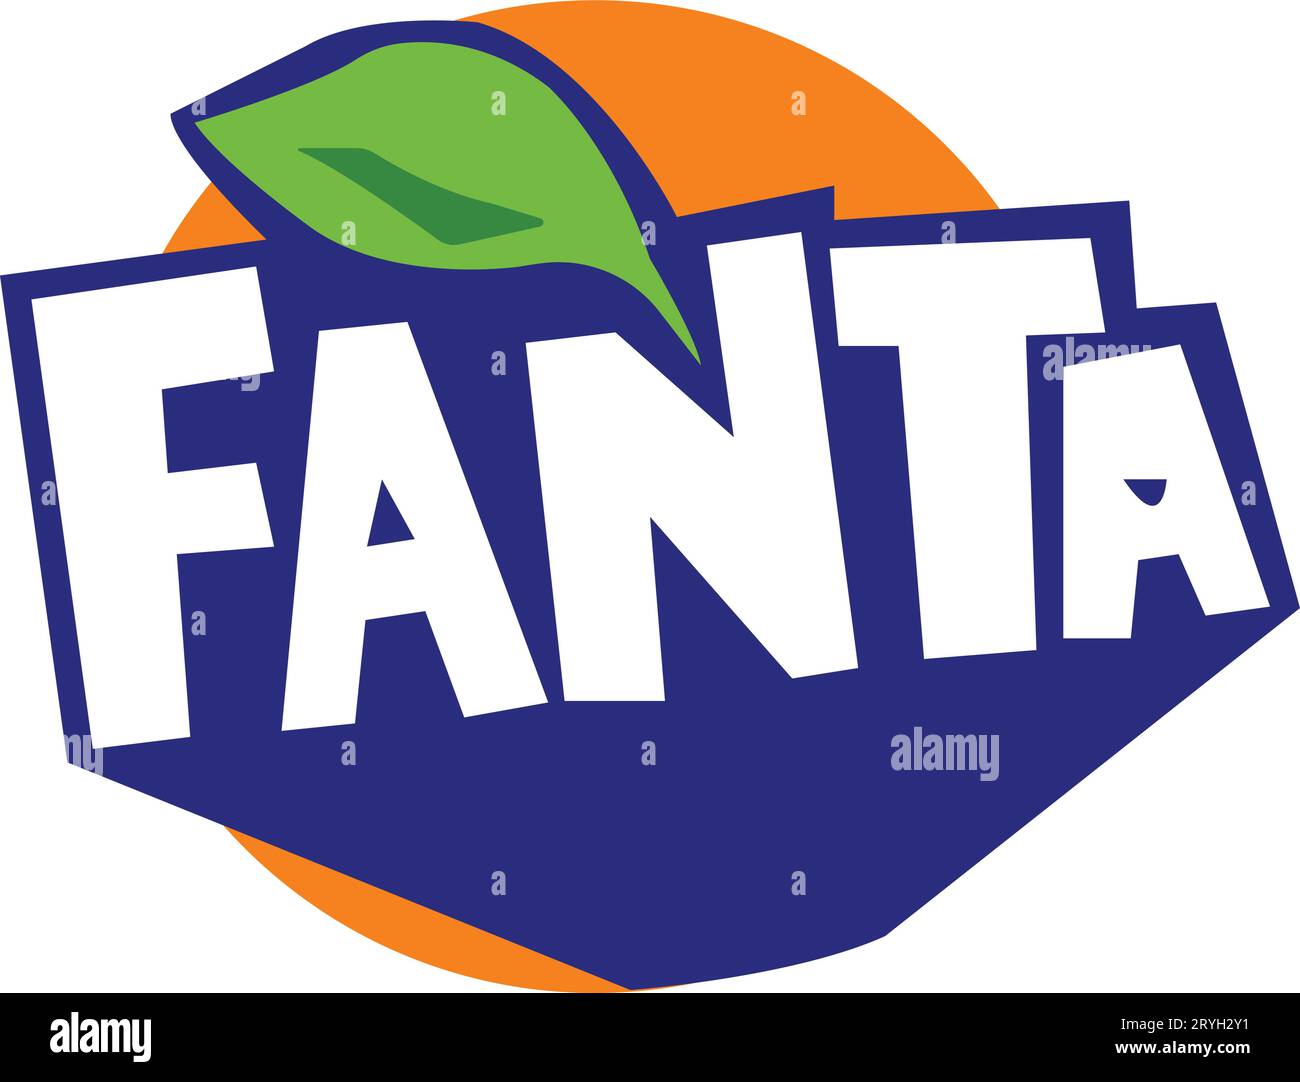 Marques de boissons. Logo de la société de boissons énergétiques Fanta. Illustration de Vecteur